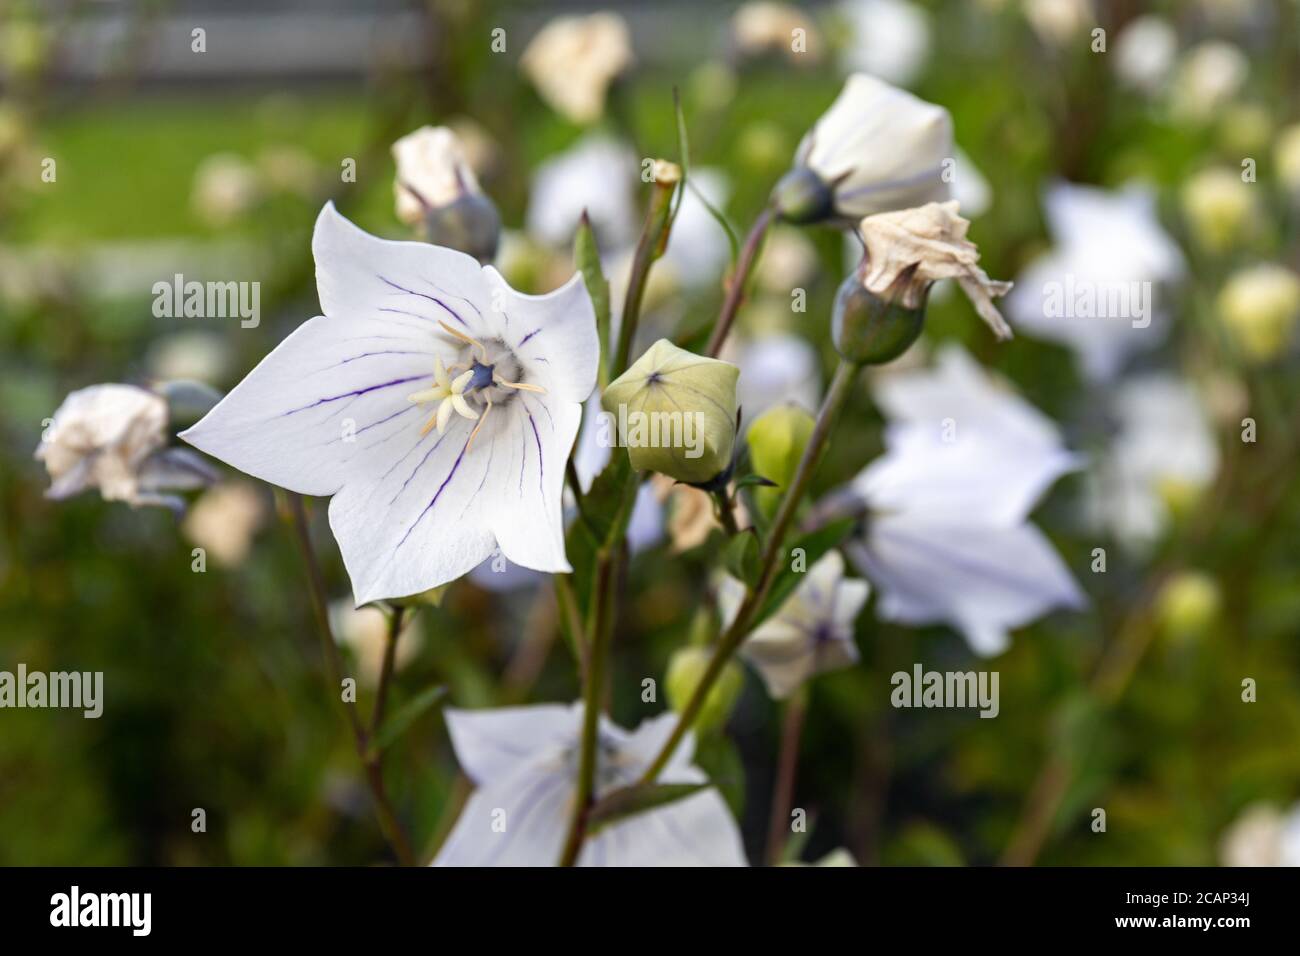 Nahaufnahme der Platycodon grandiflorus weißen Blume mit violetten Adern. Es ist allgemein bekannt als Ballonblume, chinesische Glockenblume oder Platycodon. Stockfoto